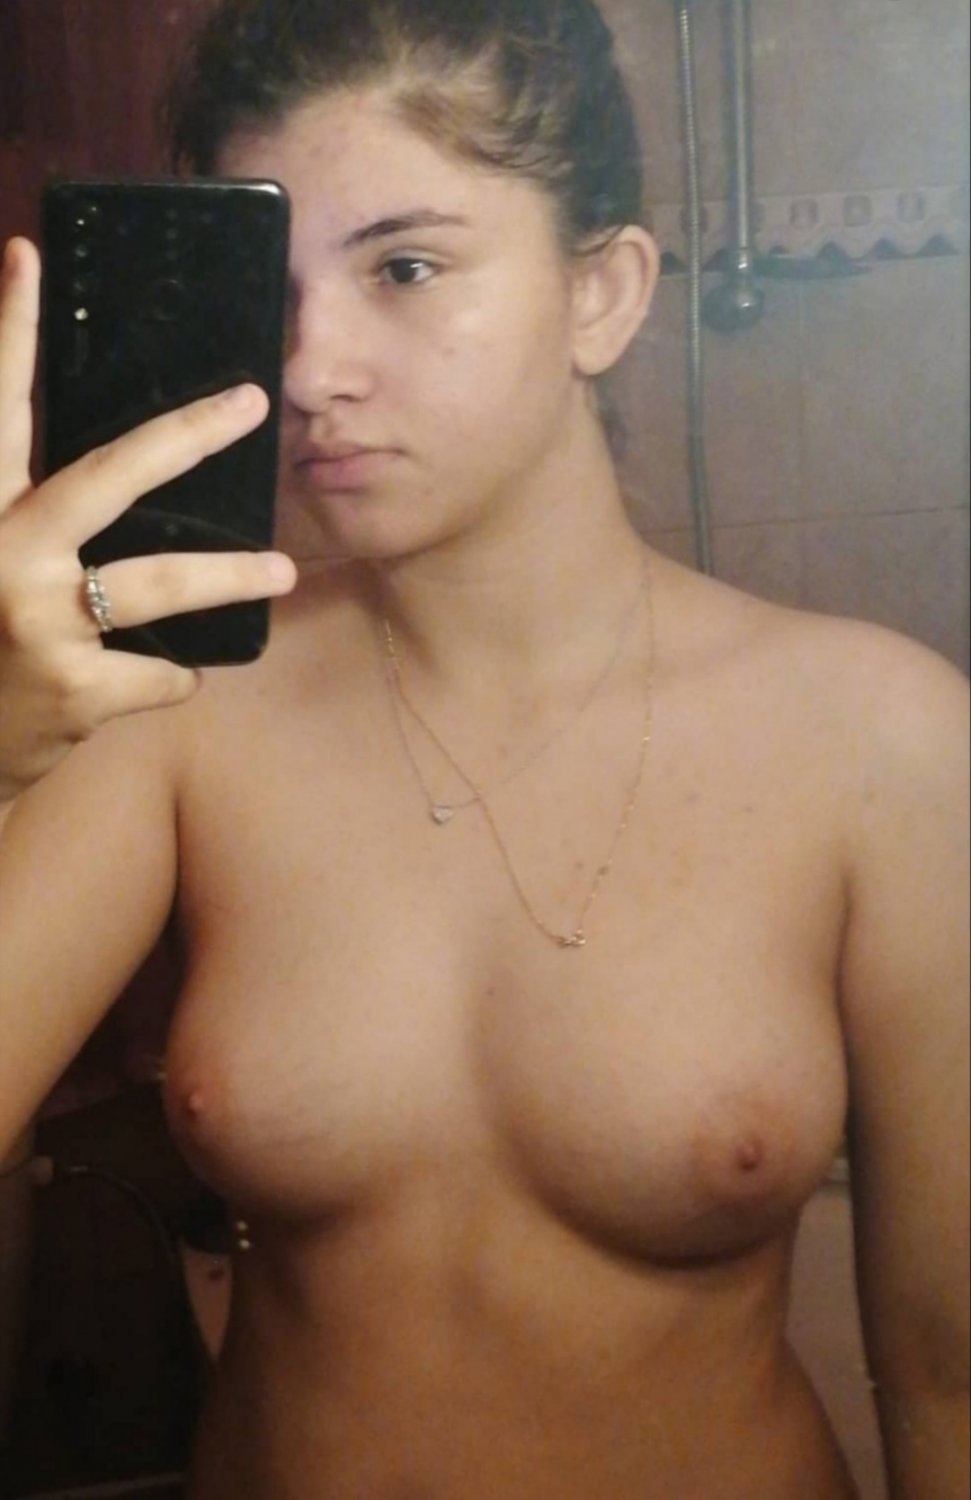 Real Teen Gf - hot teen gf nudes - Porn Videos & Photos - EroMe